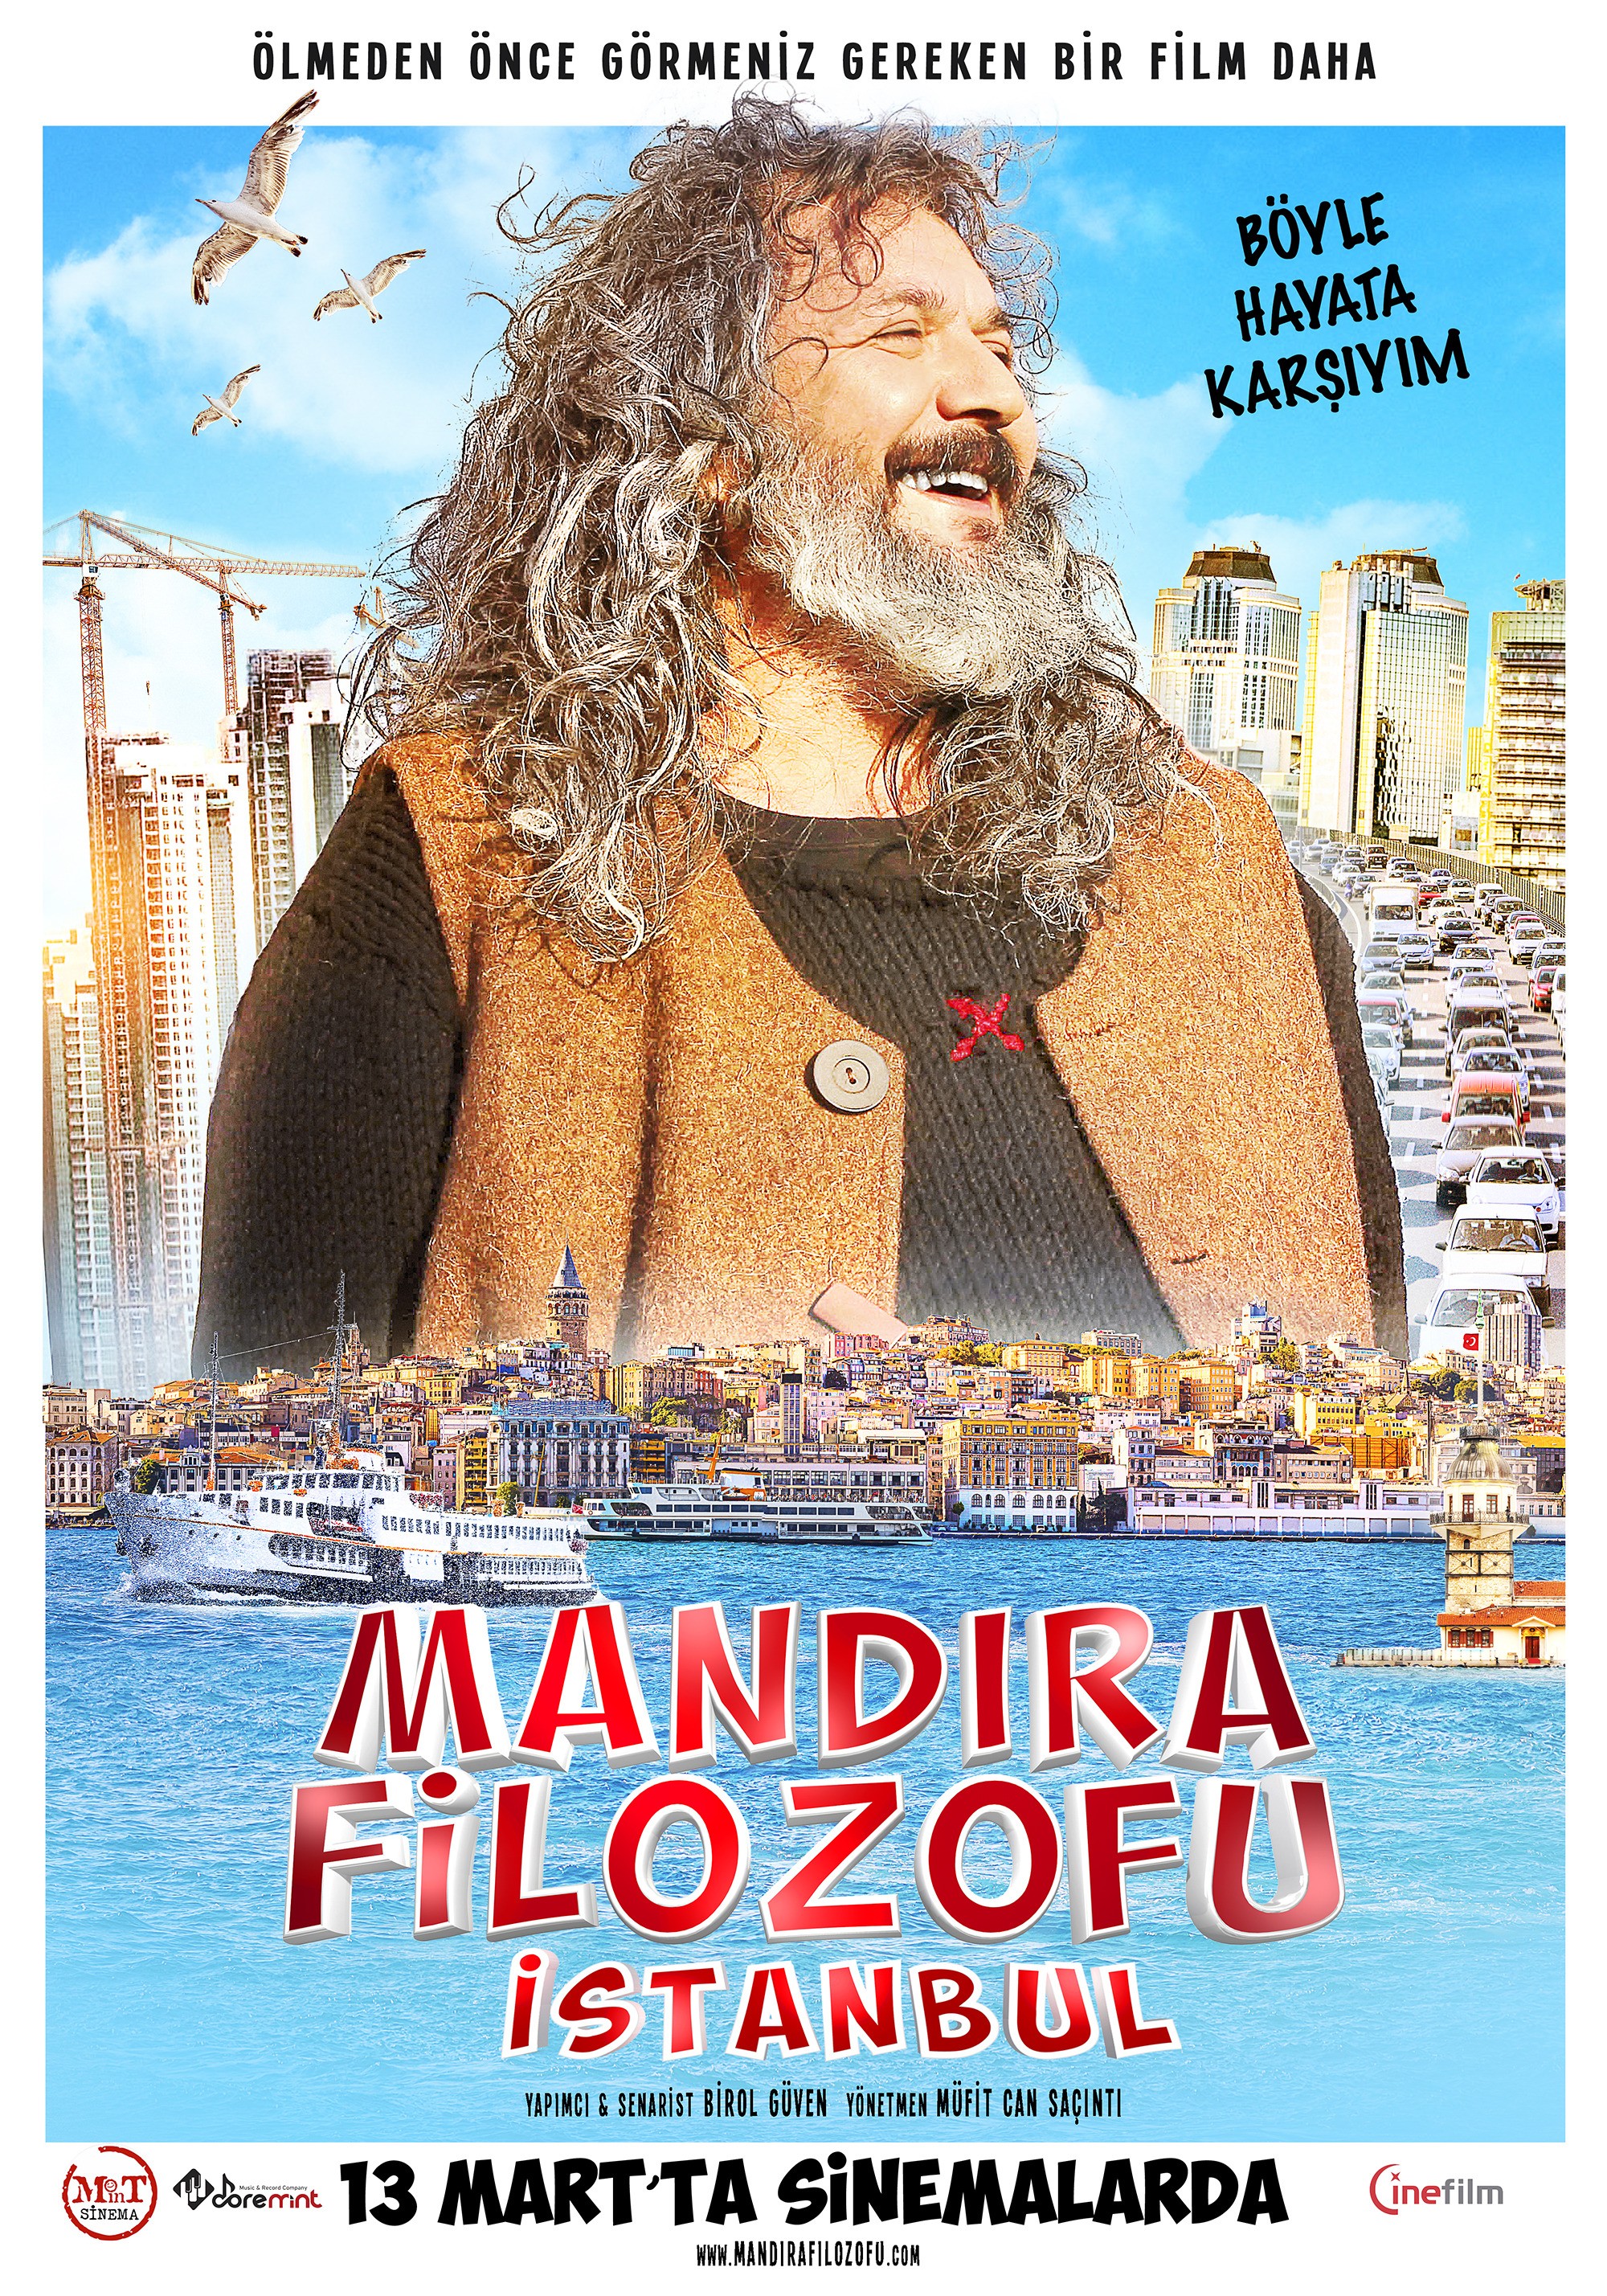 Mega Sized Movie Poster Image for Mandira Filozofu (#2 of 3)